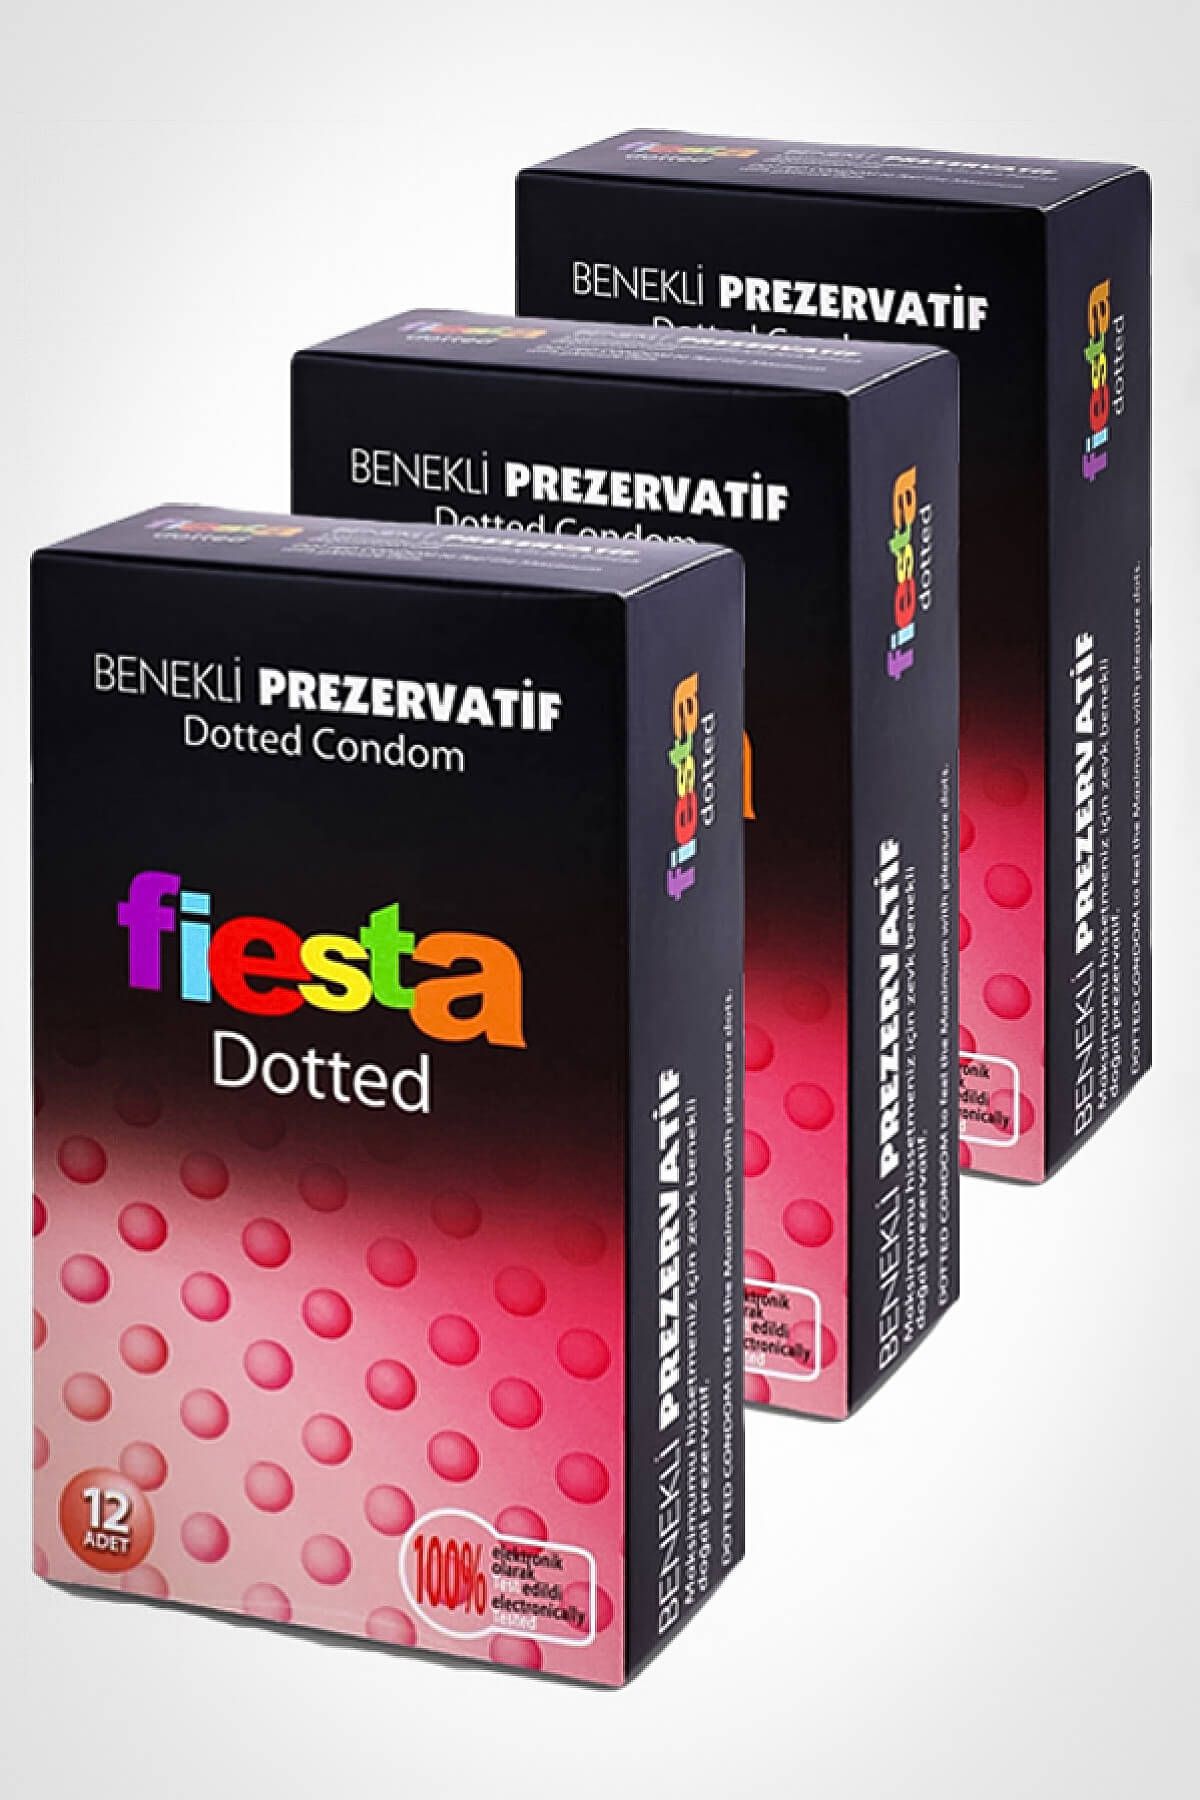 Fiesta Dotted Prezervatif Benekli 36 Adet Condom